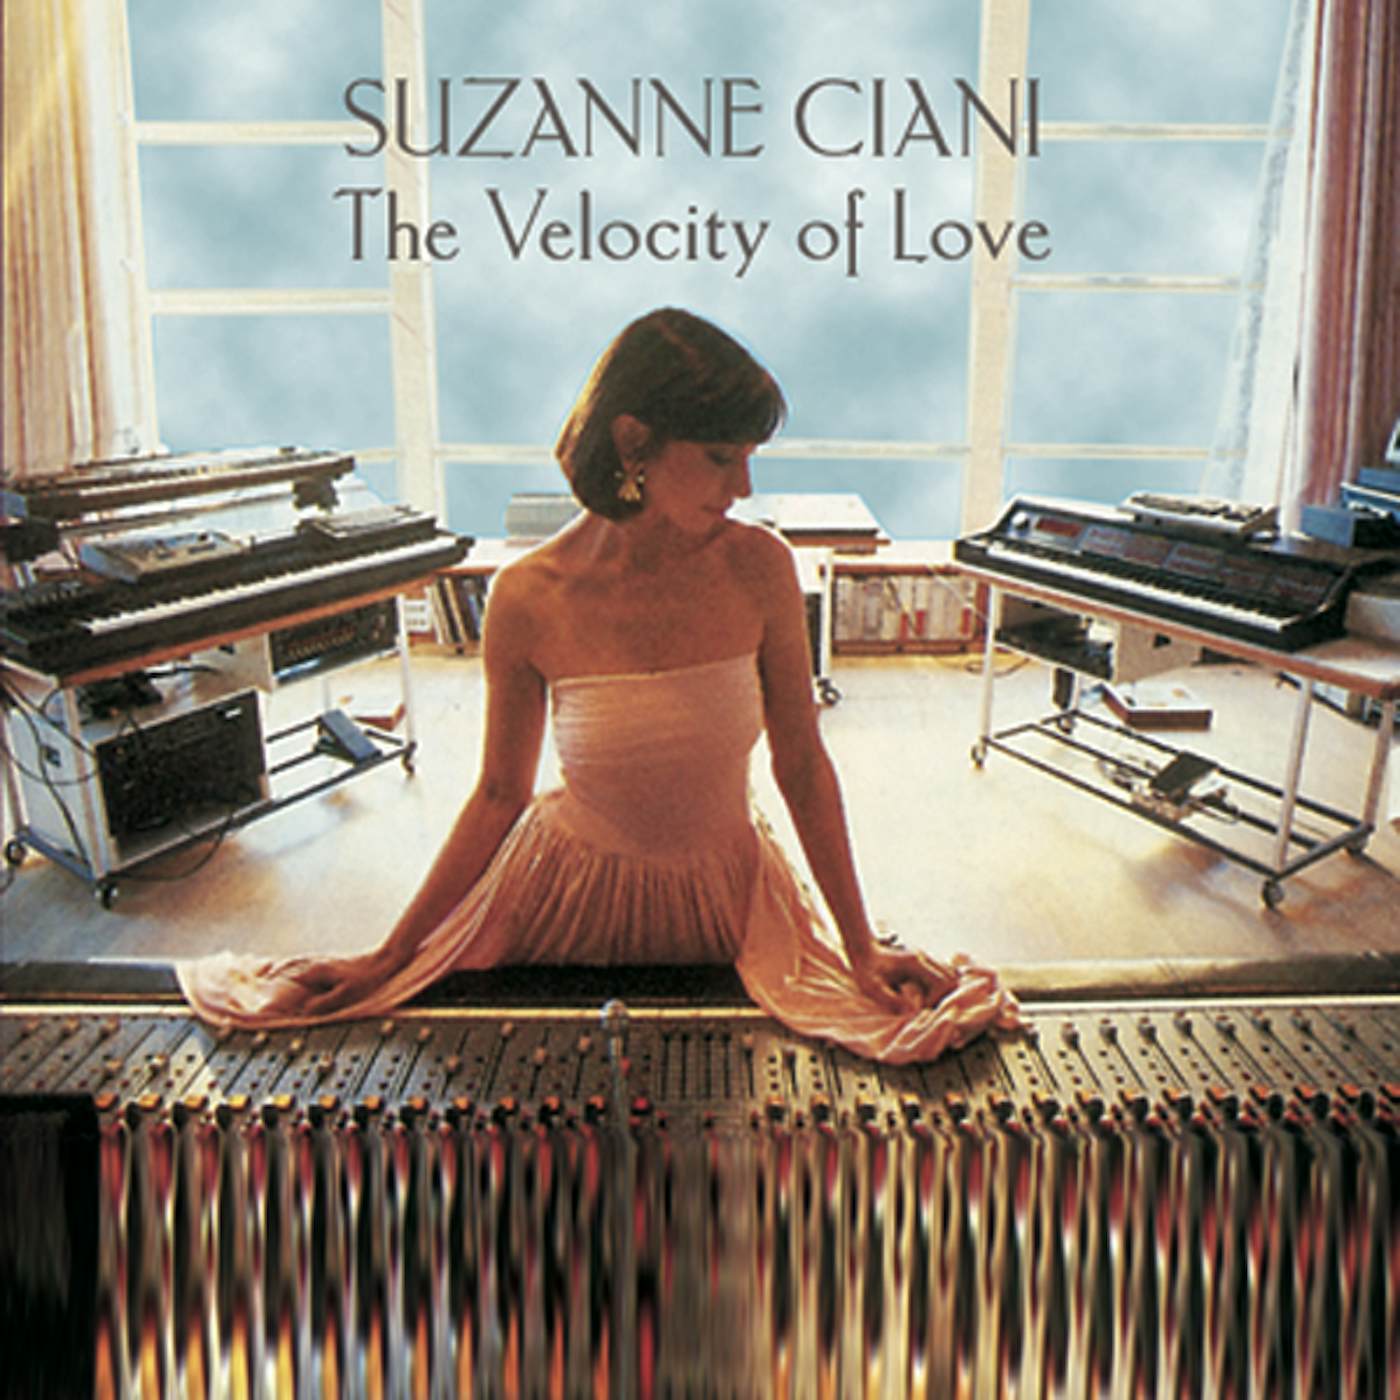 Suzanne Ciani VELOCITY OF LOVE CD